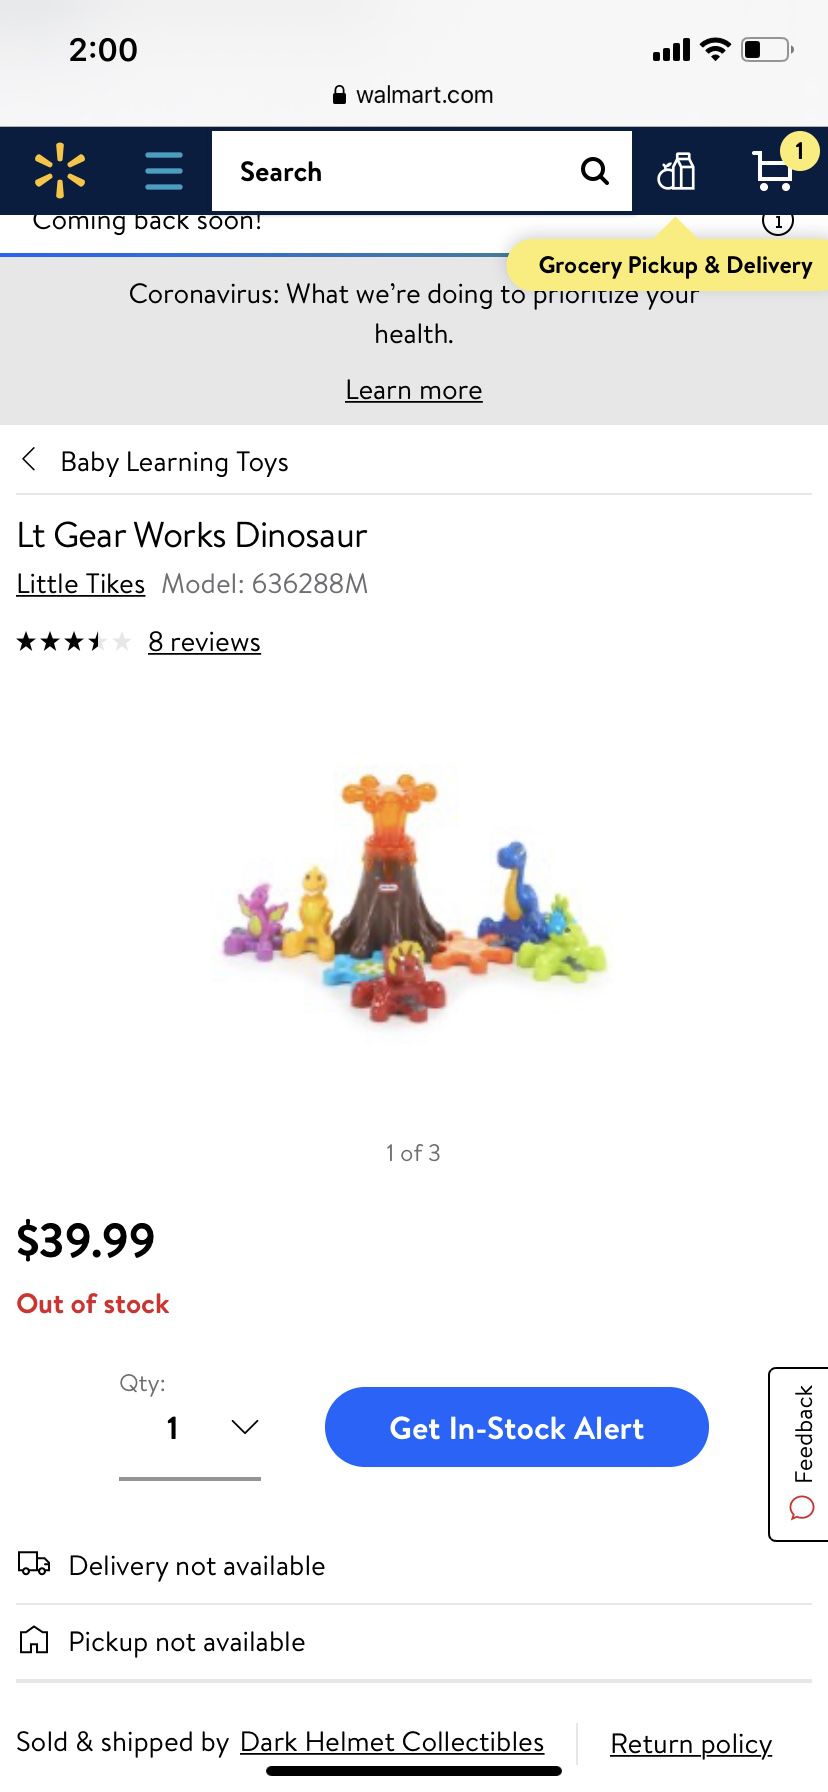 Dinosaur gear toys